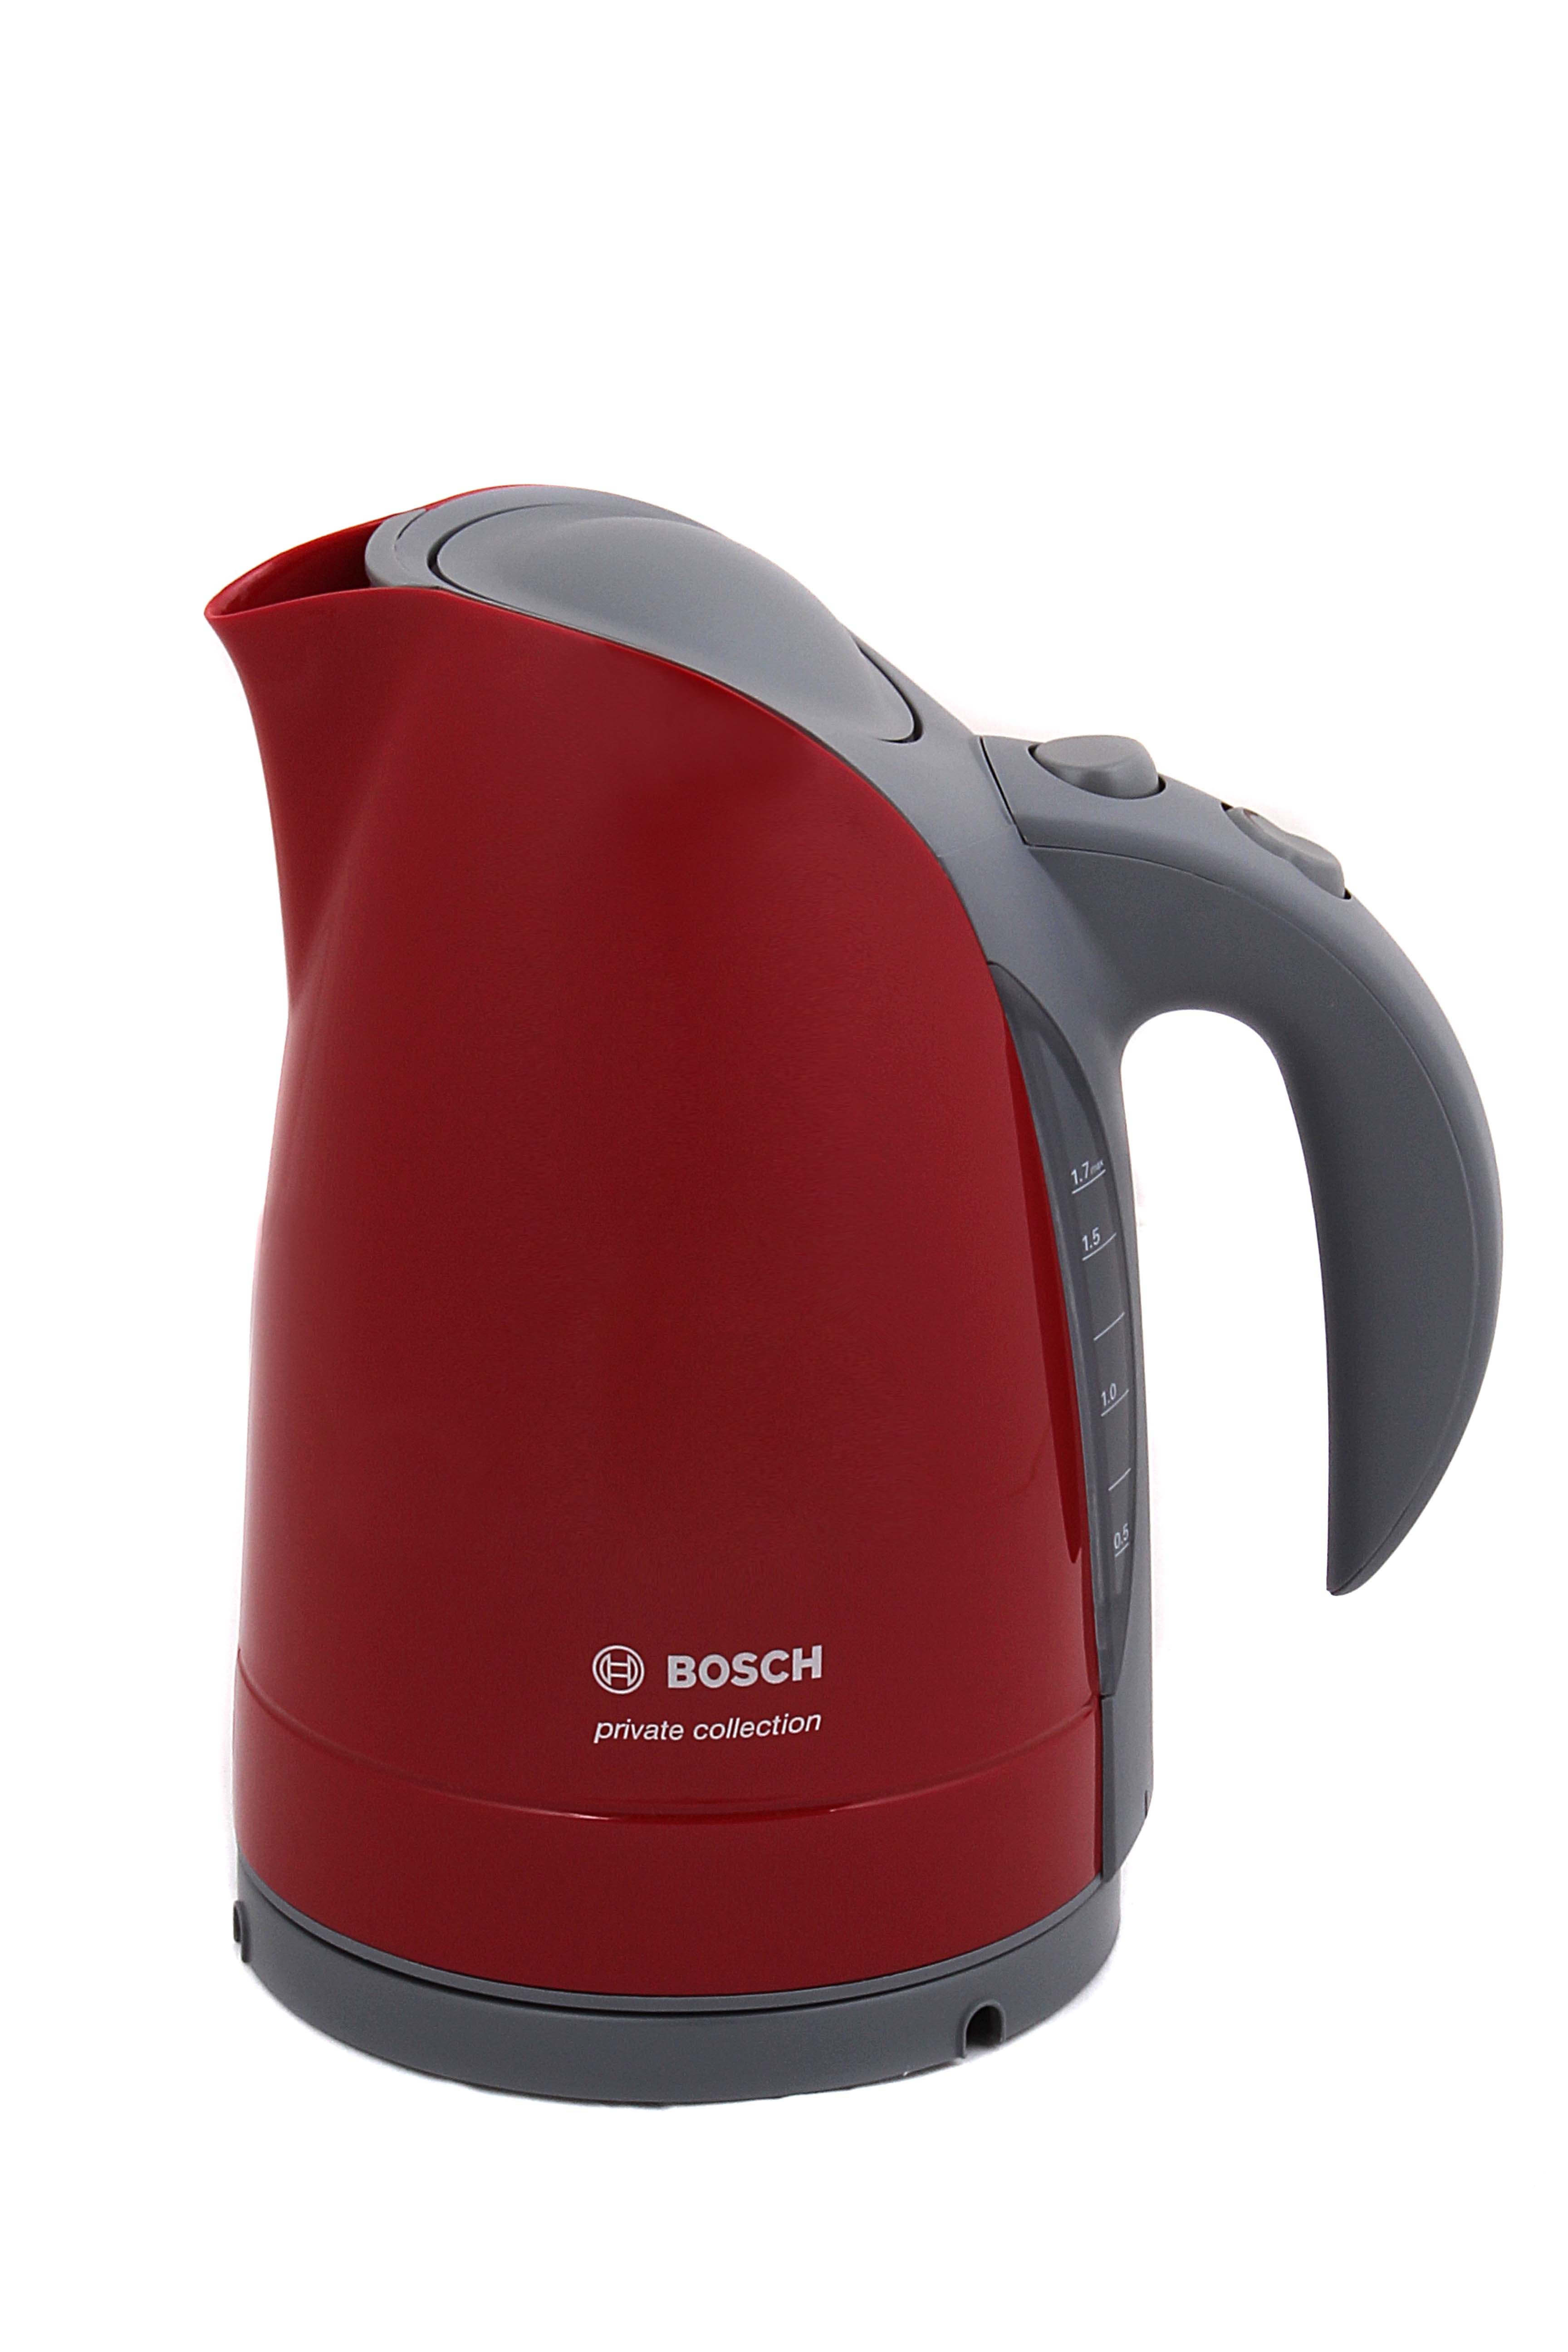 Bosch collection. Чайник Klein Bosch 9548. Электрический чайник Bosch красный. Чайник бош TWK. ДНС чайник электрический бош.